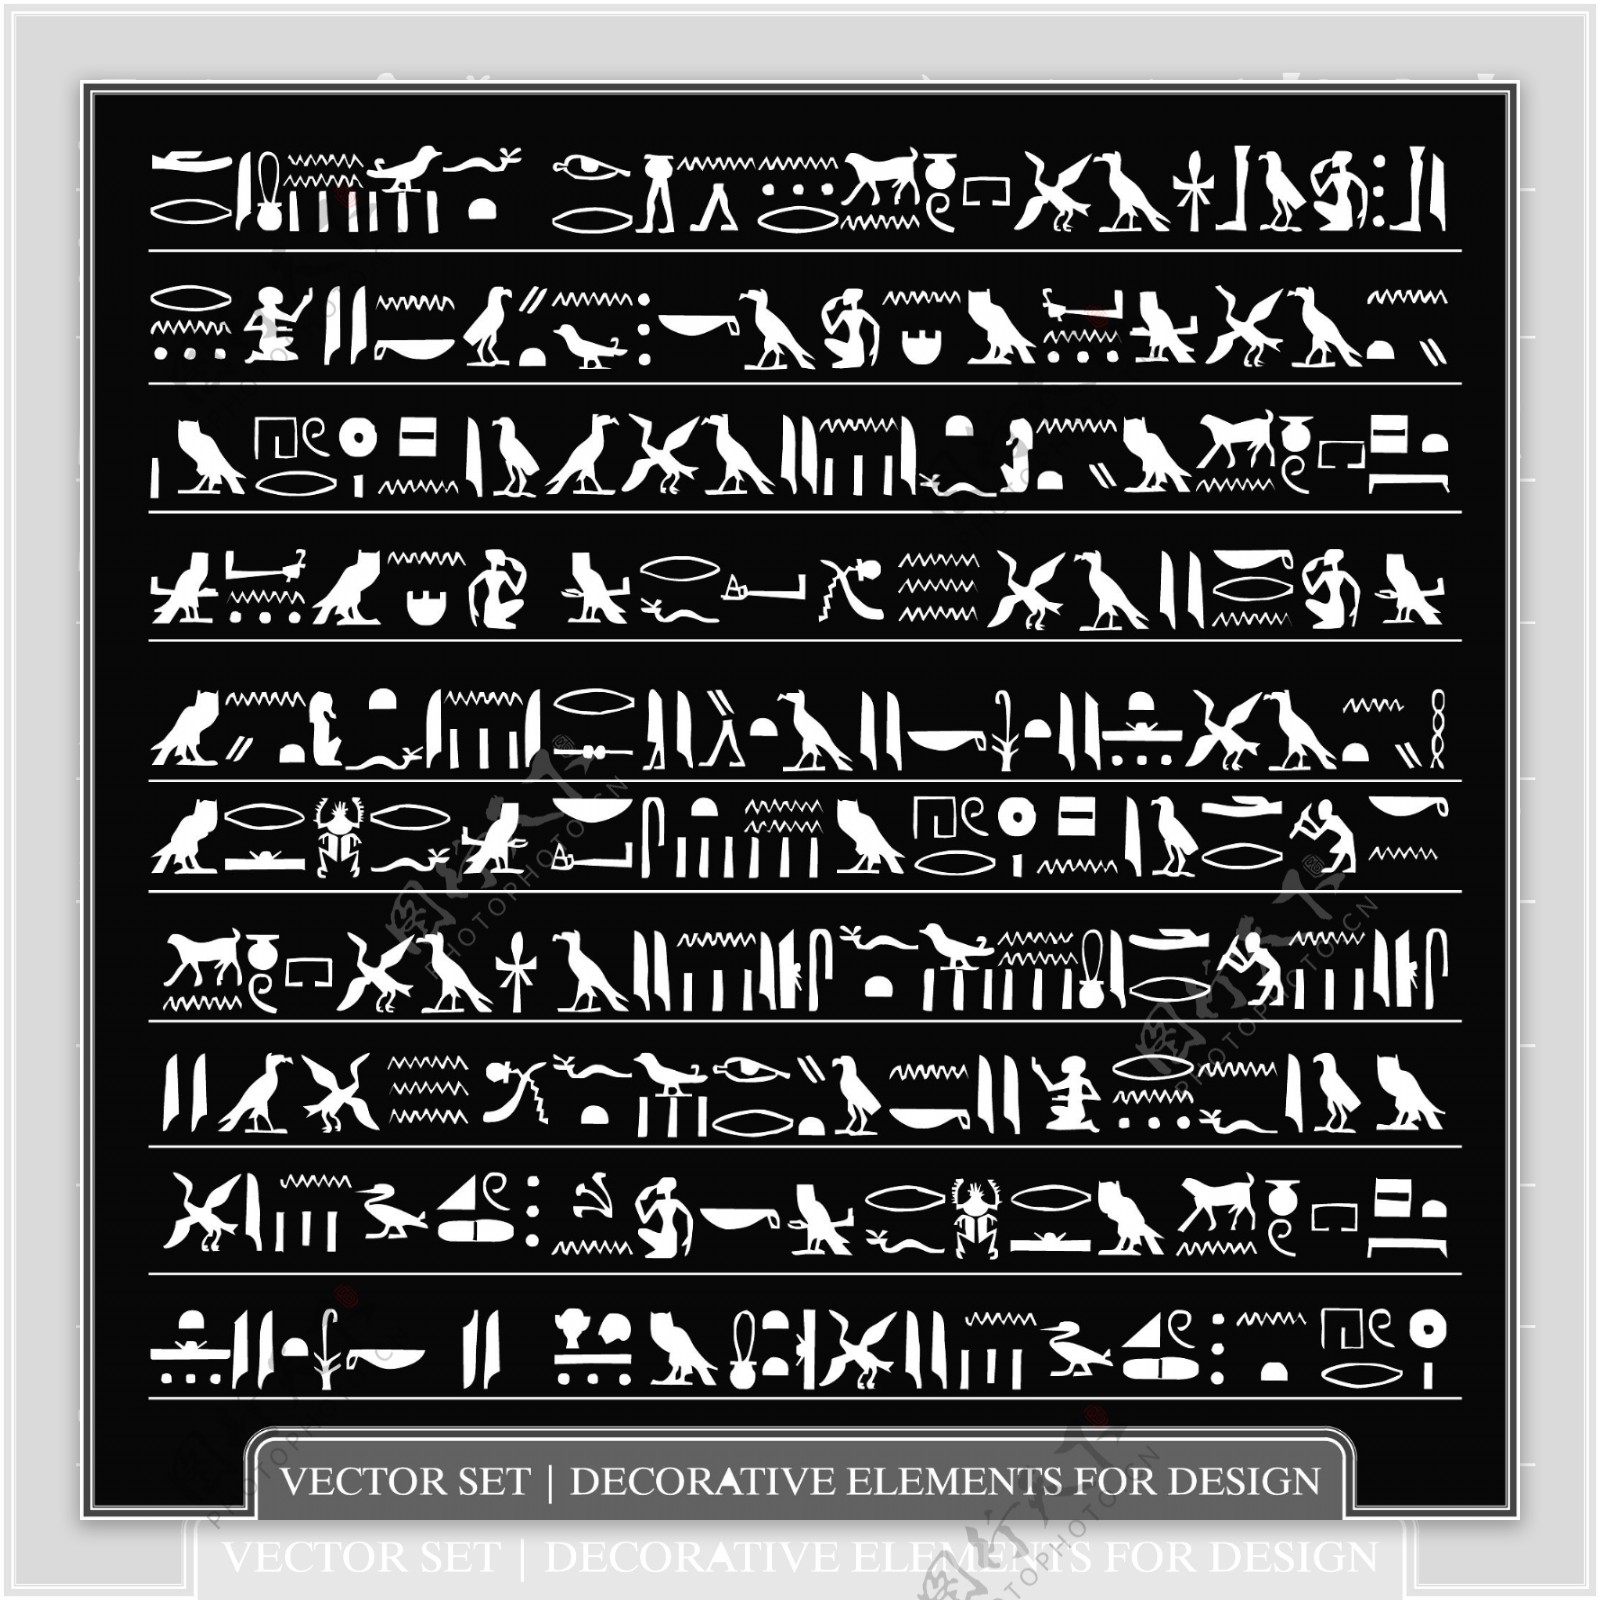 埃及传统文化元素设计矢量素材